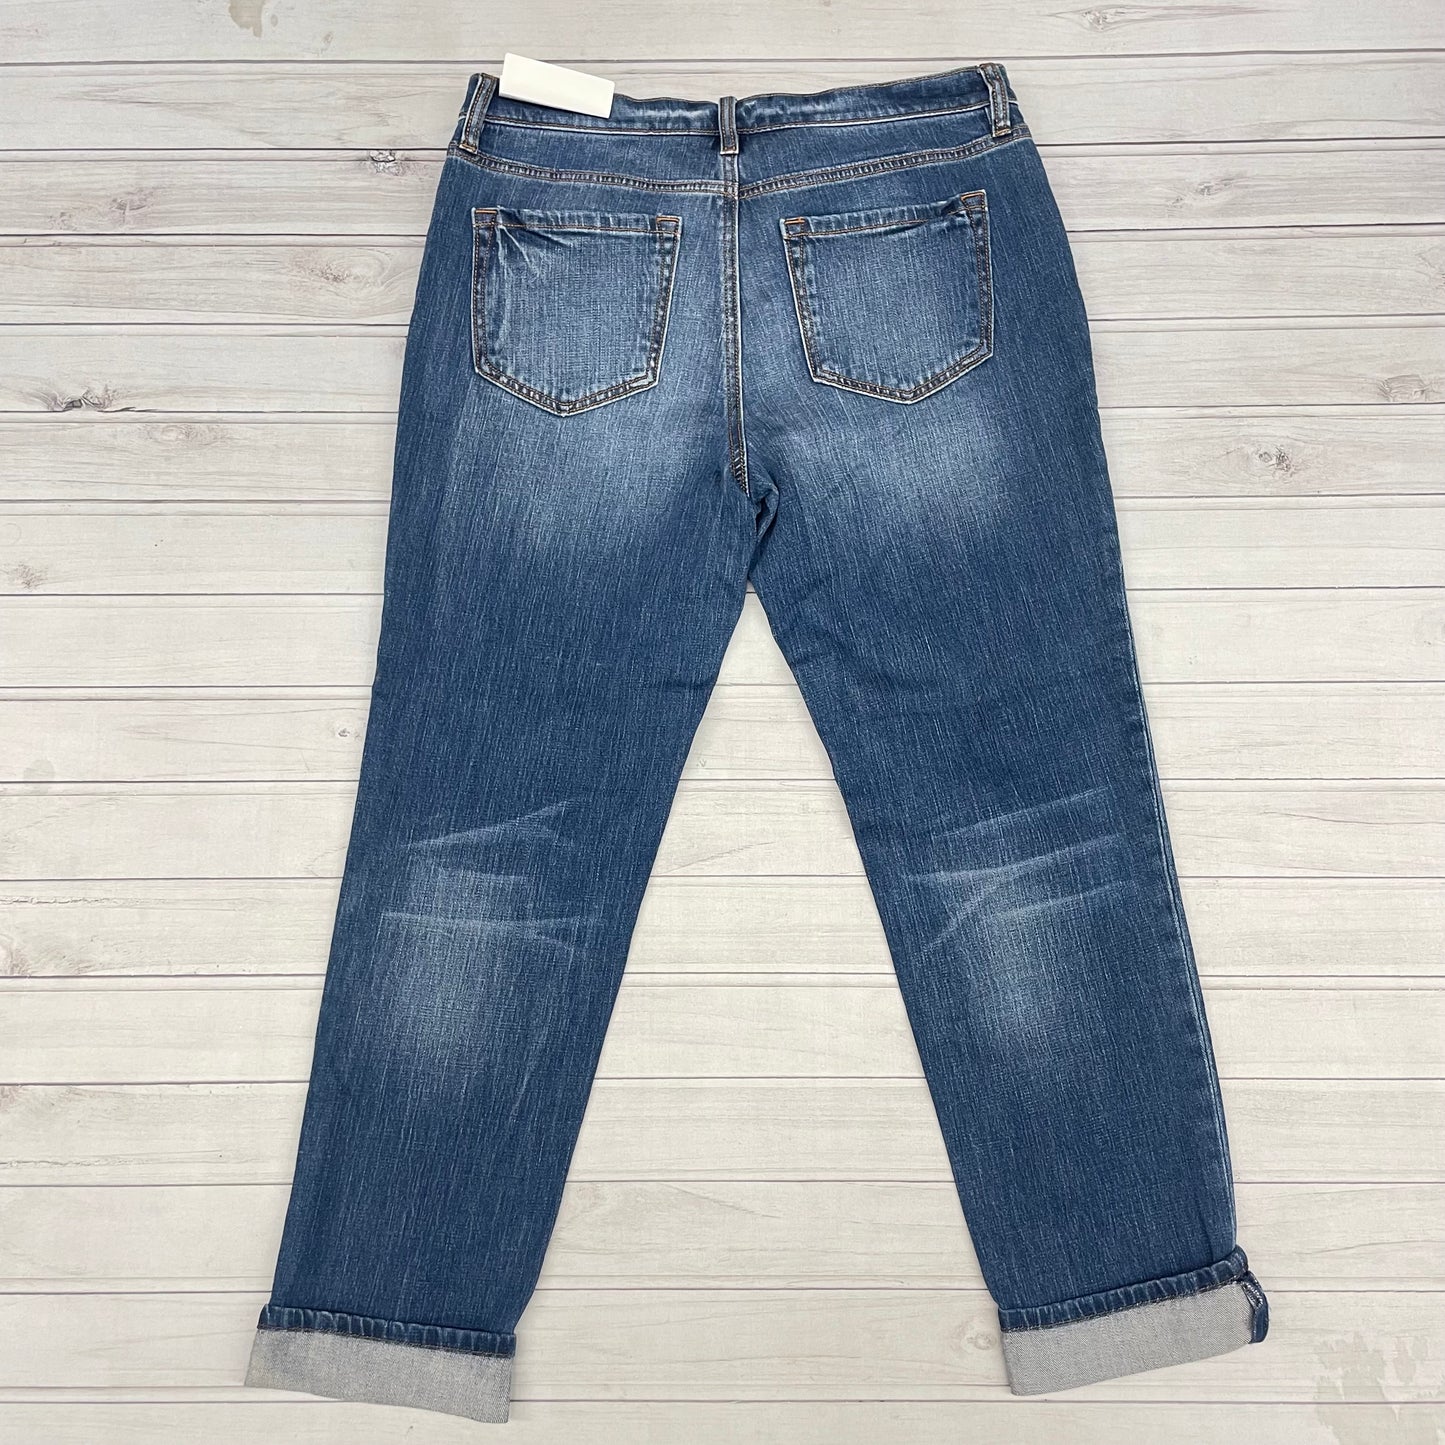 Jeans Cropped By Loft  Size: 8